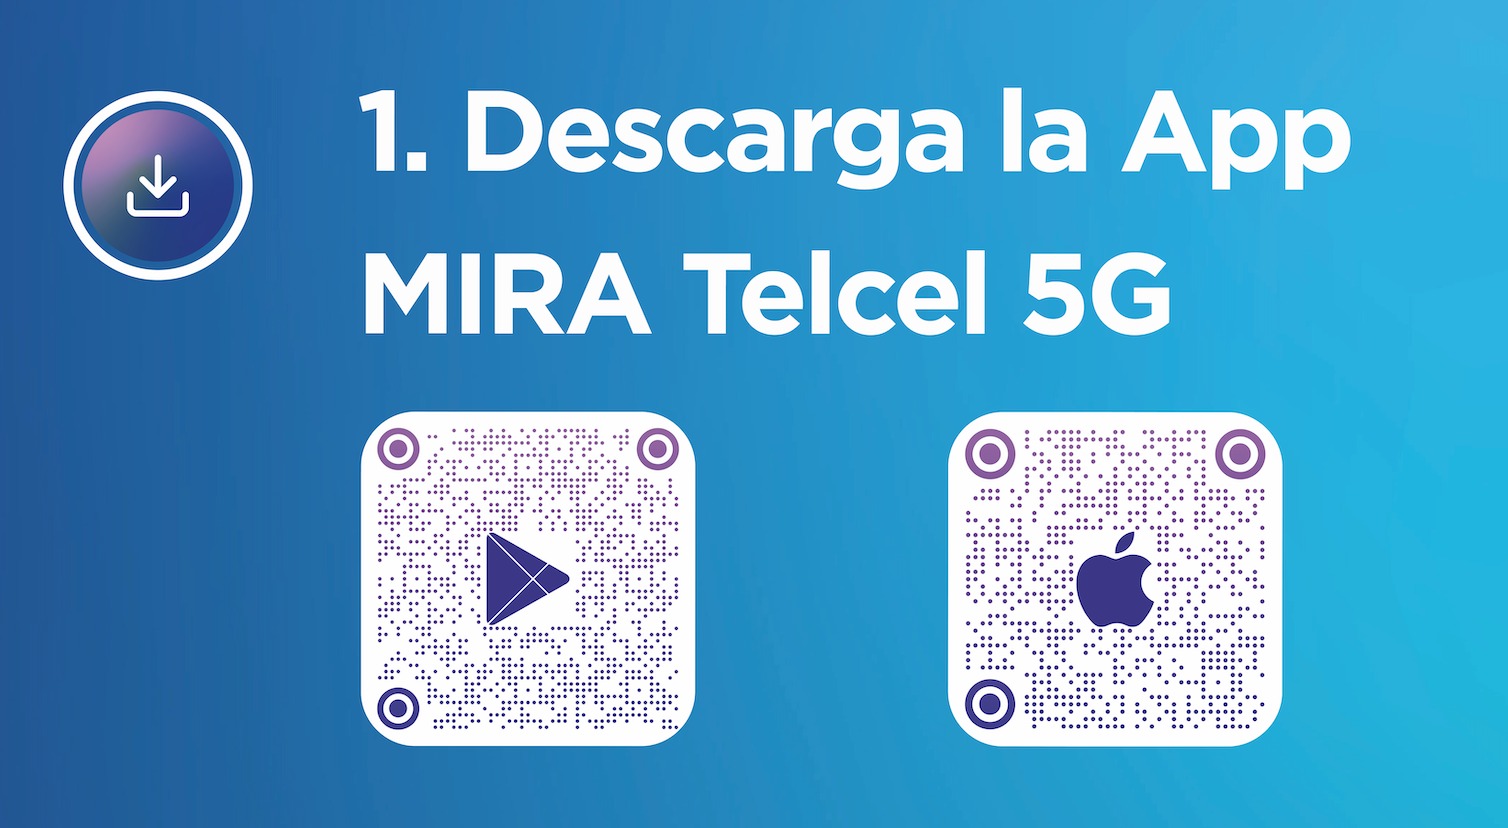 Escanéa el código QR y descarga la App Mira Telcel 5G.- Blog Hola Telcel